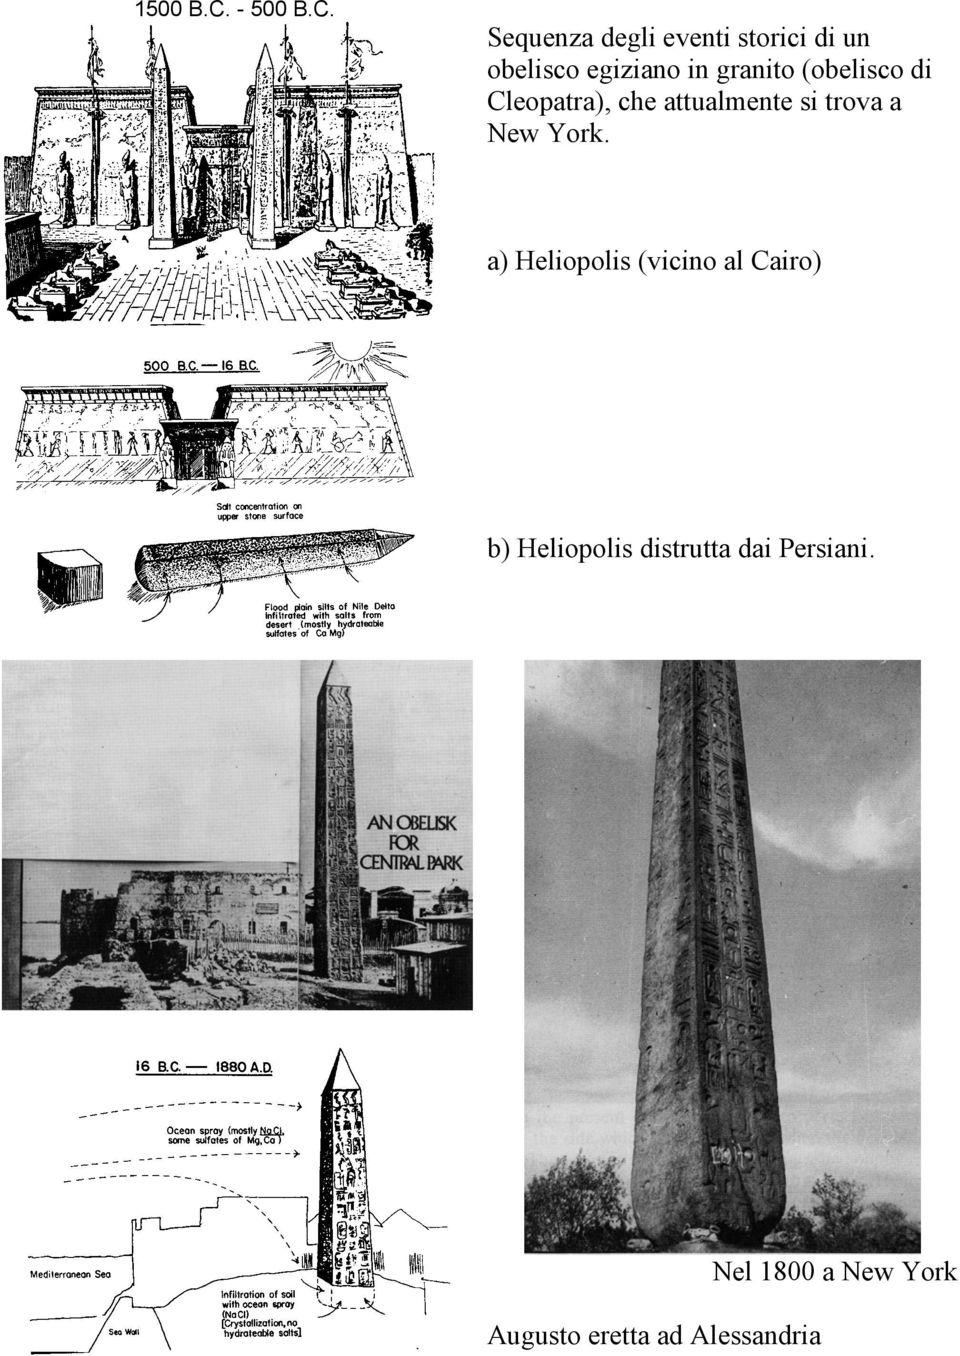 Sequenza degli eventi storici di un obelisco egiziano in granito